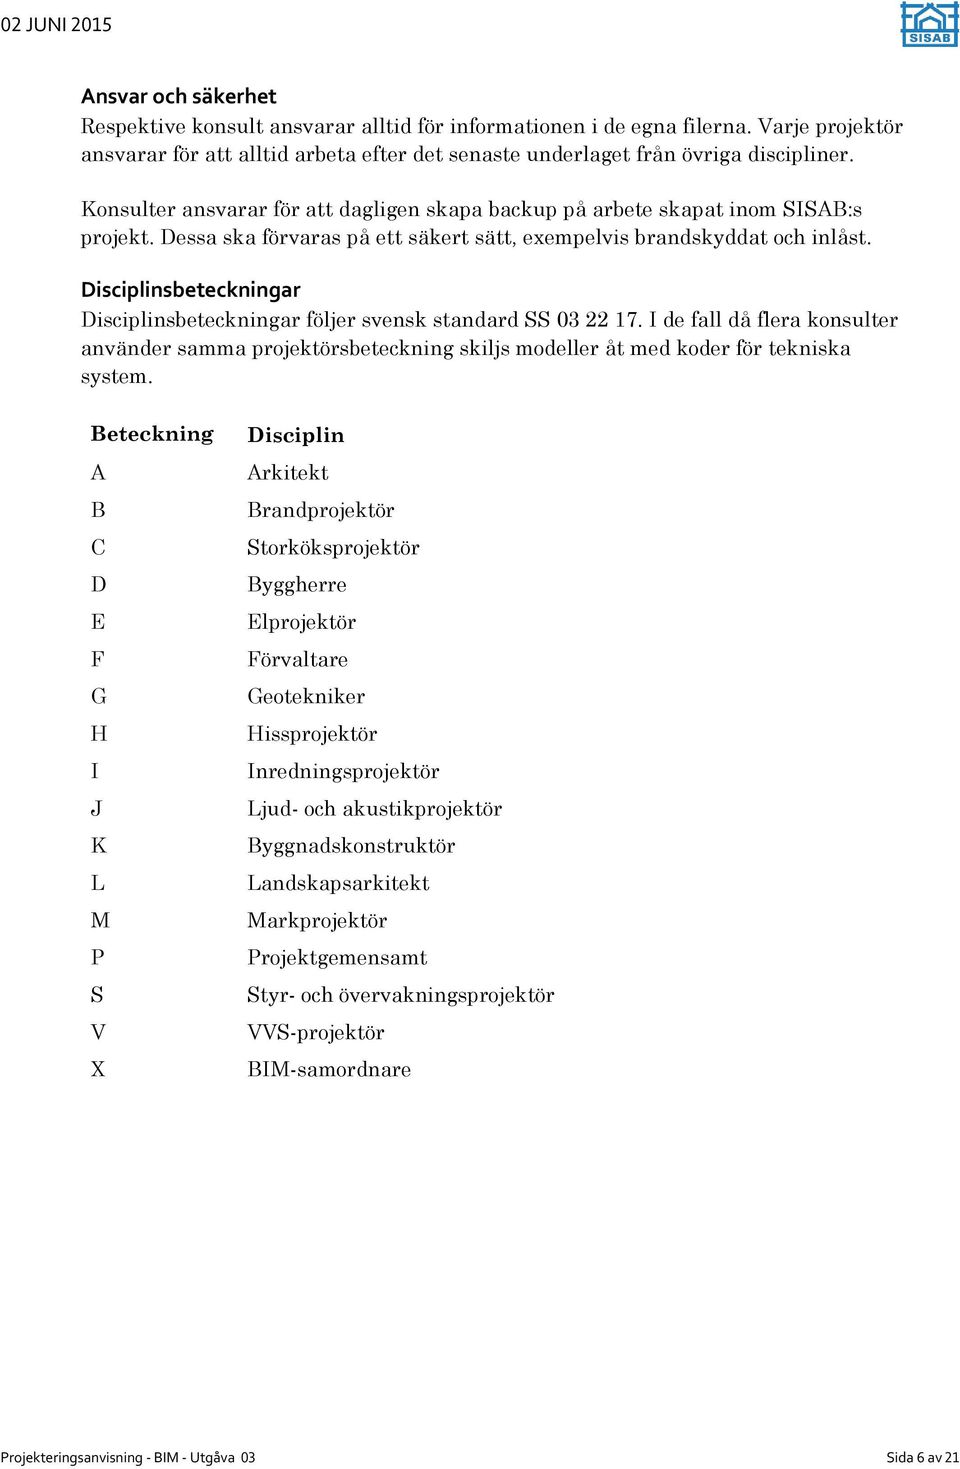 Disciplinsbeteckningar Disciplinsbeteckningar följer svensk standard SS 03 22 17. I de fall då flera konsulter använder samma projektörsbeteckning skiljs modeller åt med koder för tekniska system.